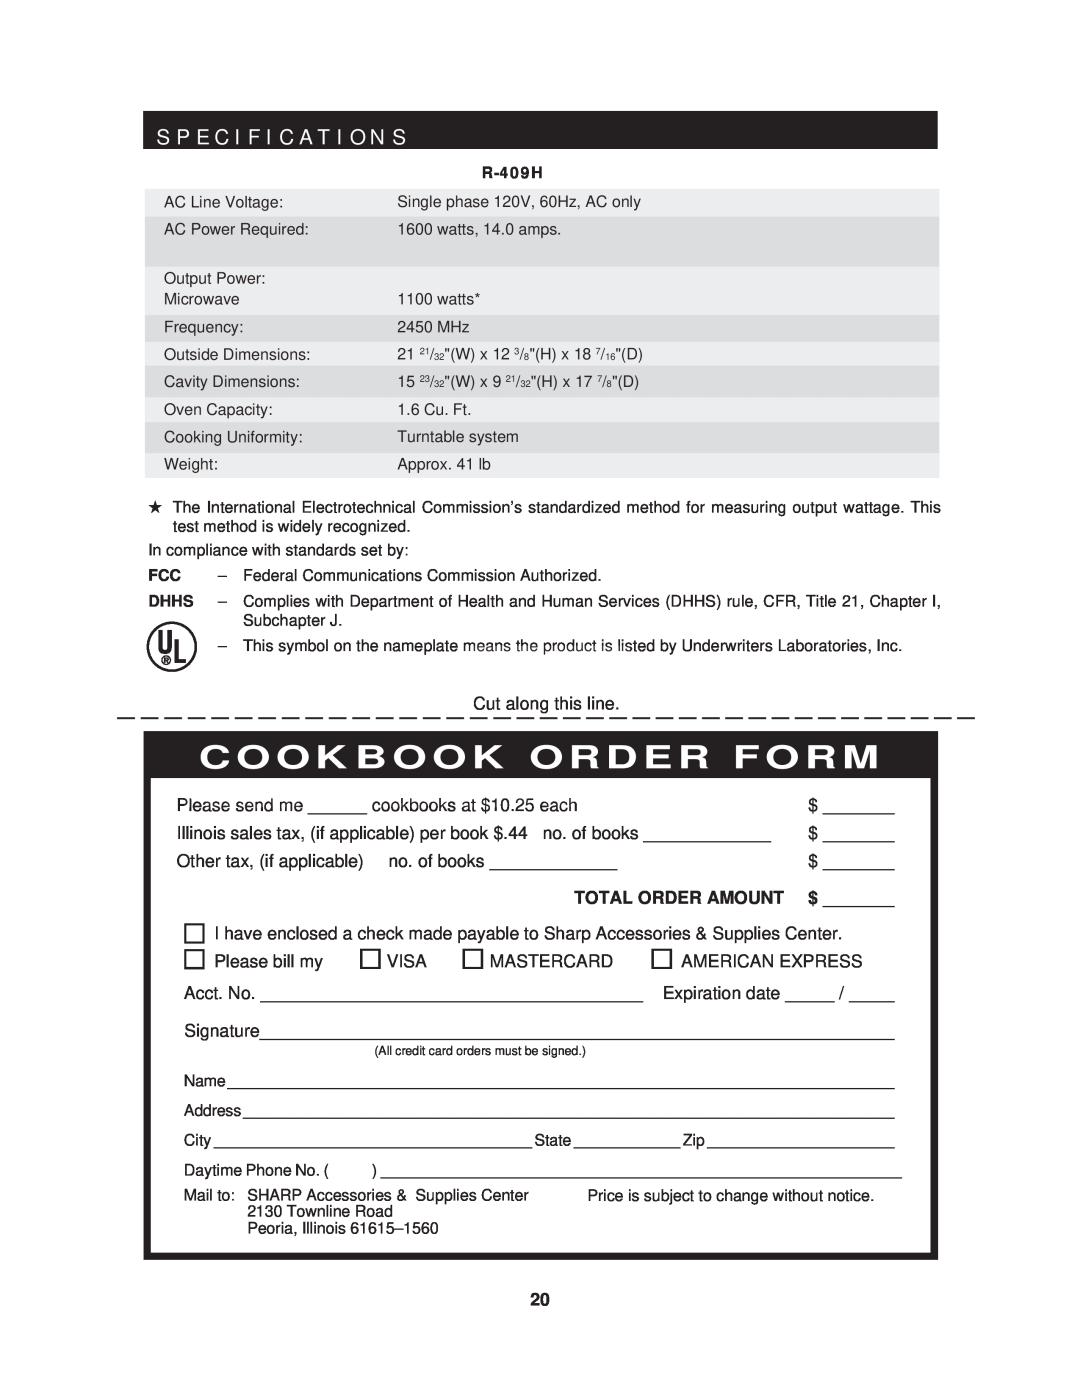 Sharp R-409HK warranty S P E C I F I C A T I O N S, Cookbook Order Form, Total Order Amount 